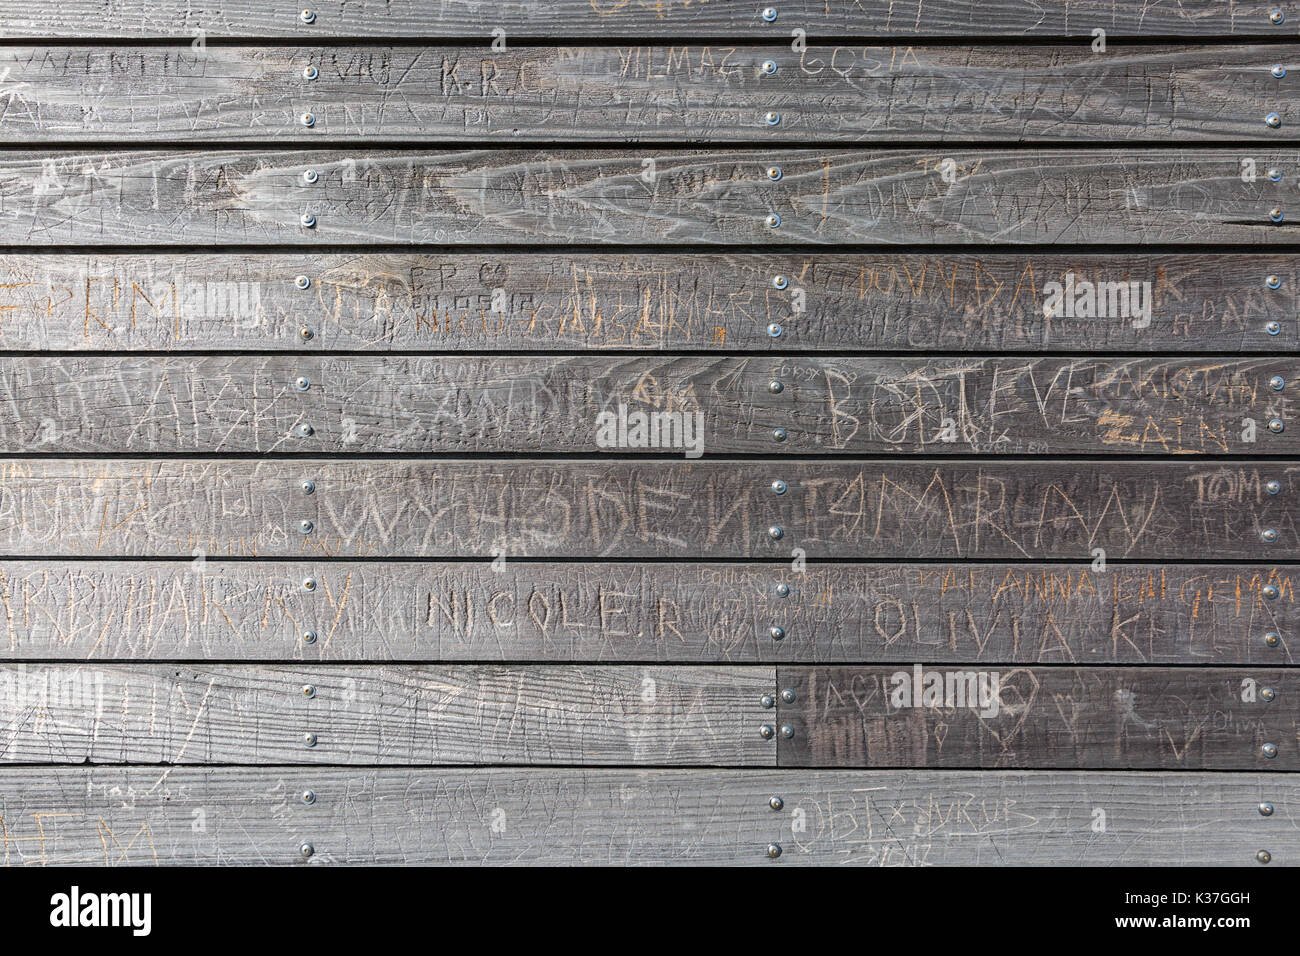 Gli scarabocchi, scarabocchi e iscrizioni graffiato in una parete di pannelli di legno, legno listone texture di sfondo, Regno Unito Foto Stock